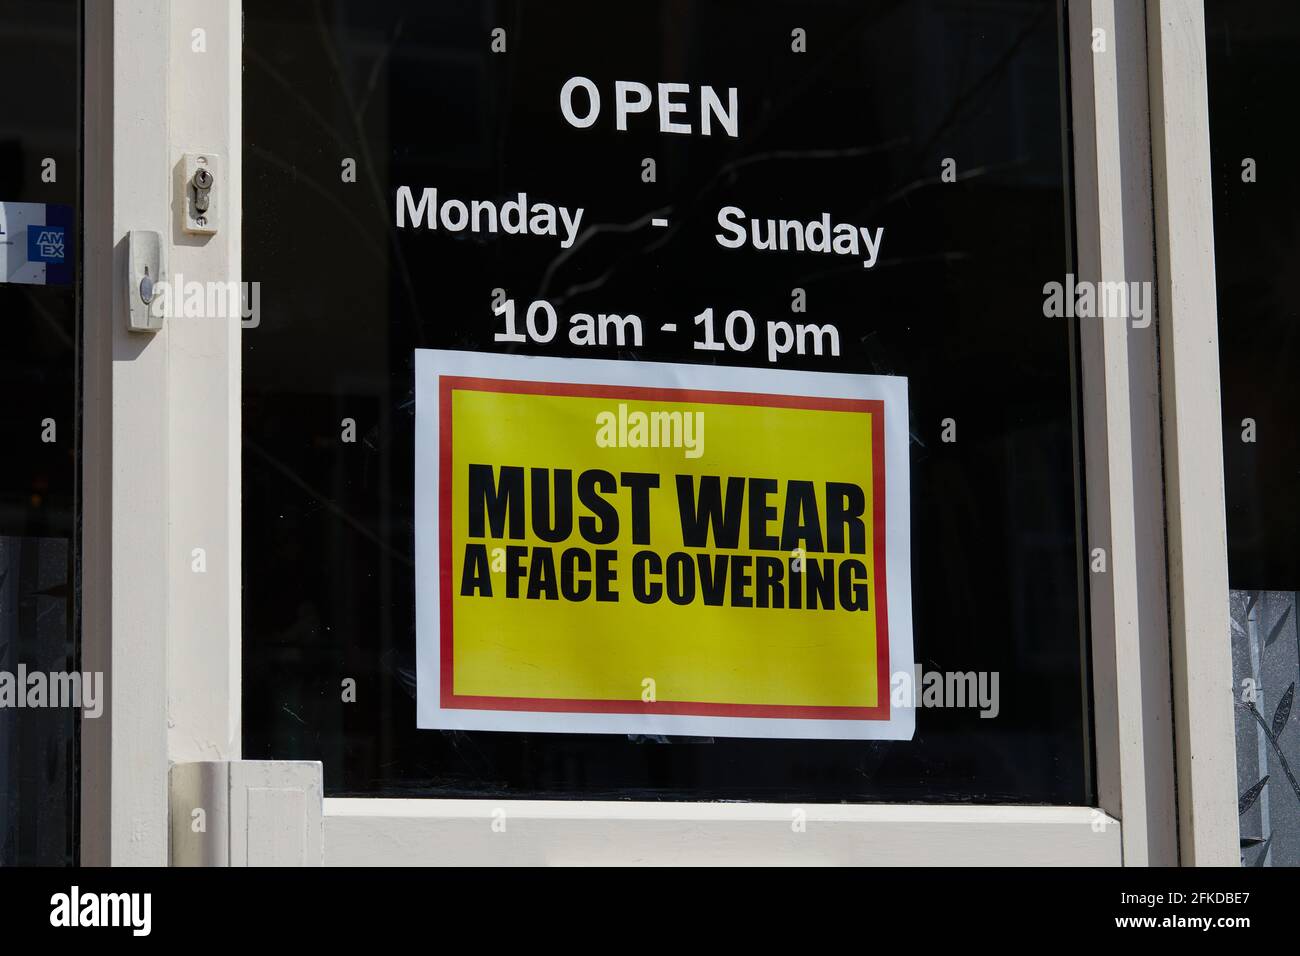 Londres, Reino Unido - 16 de abril de 2021: Un aviso contundente pide a los clientes que lleven una cubierta facial en un negocio minorista durante la pandemia del coronavirus. Foto de stock